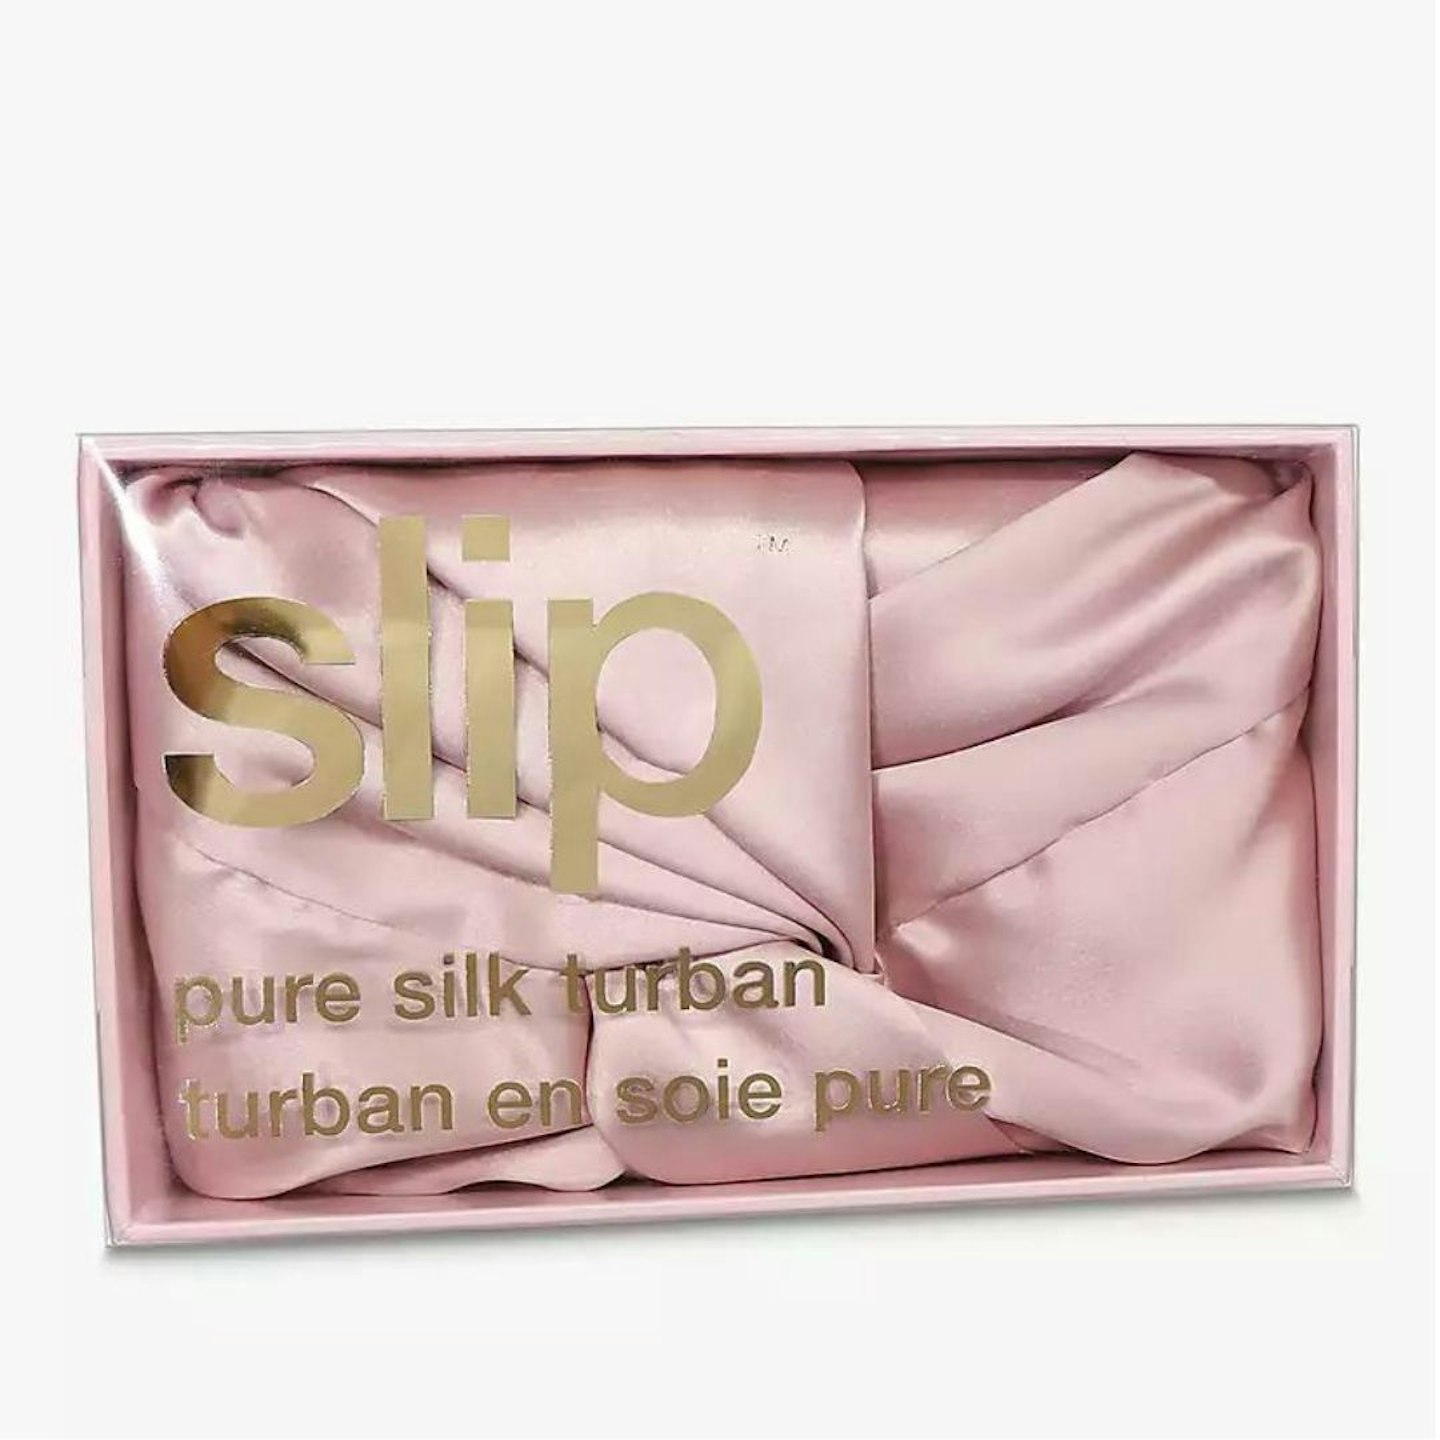 SlipPure Silk Turban